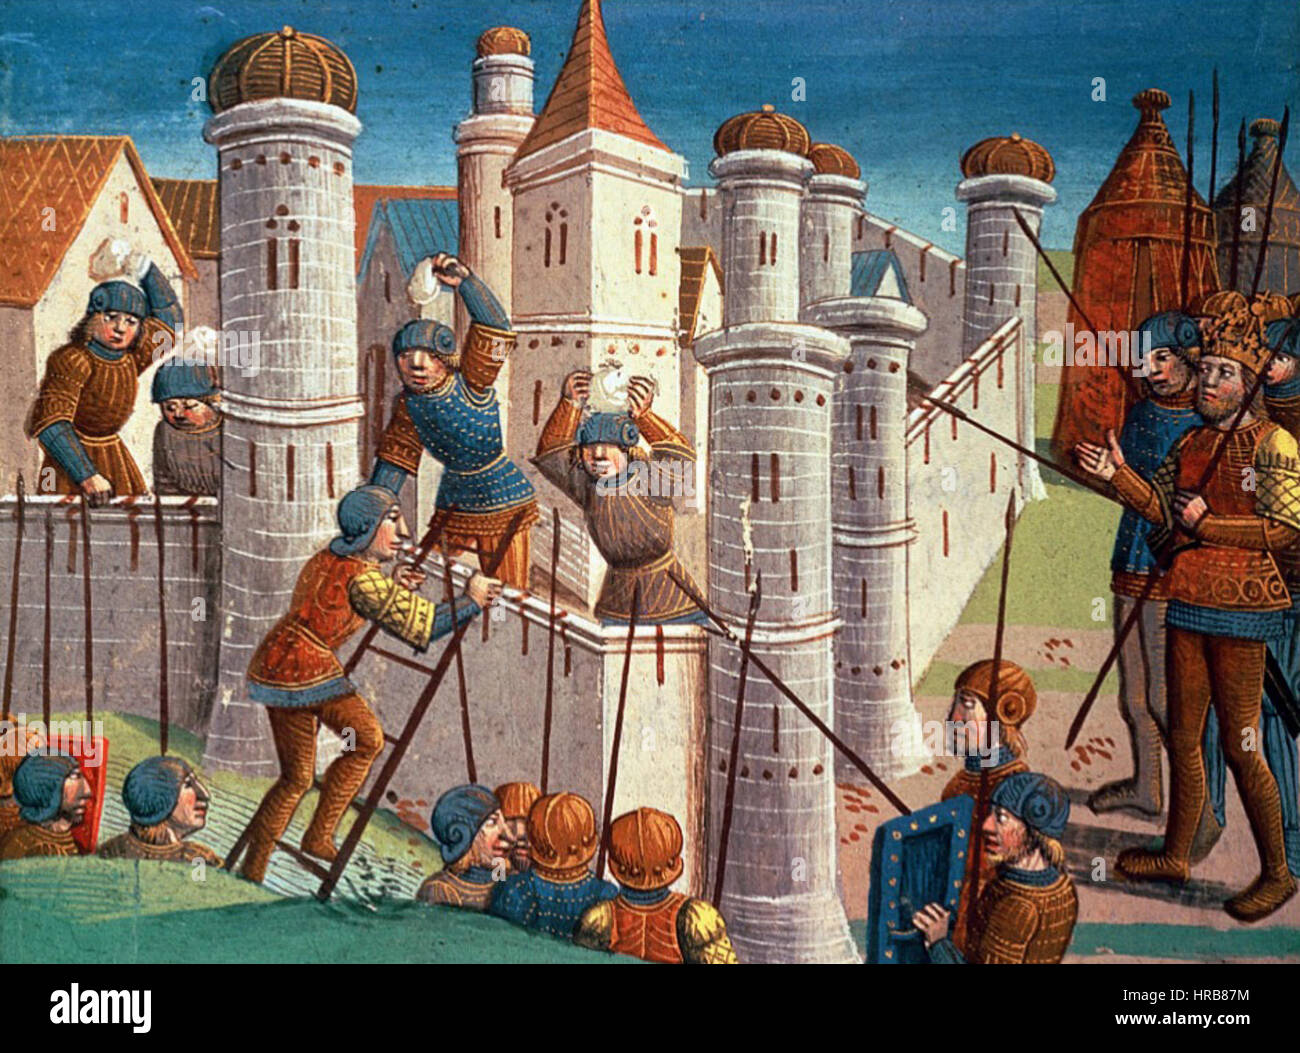 Miniatura medieval fotografías e imágenes de alta resolución - Alamy